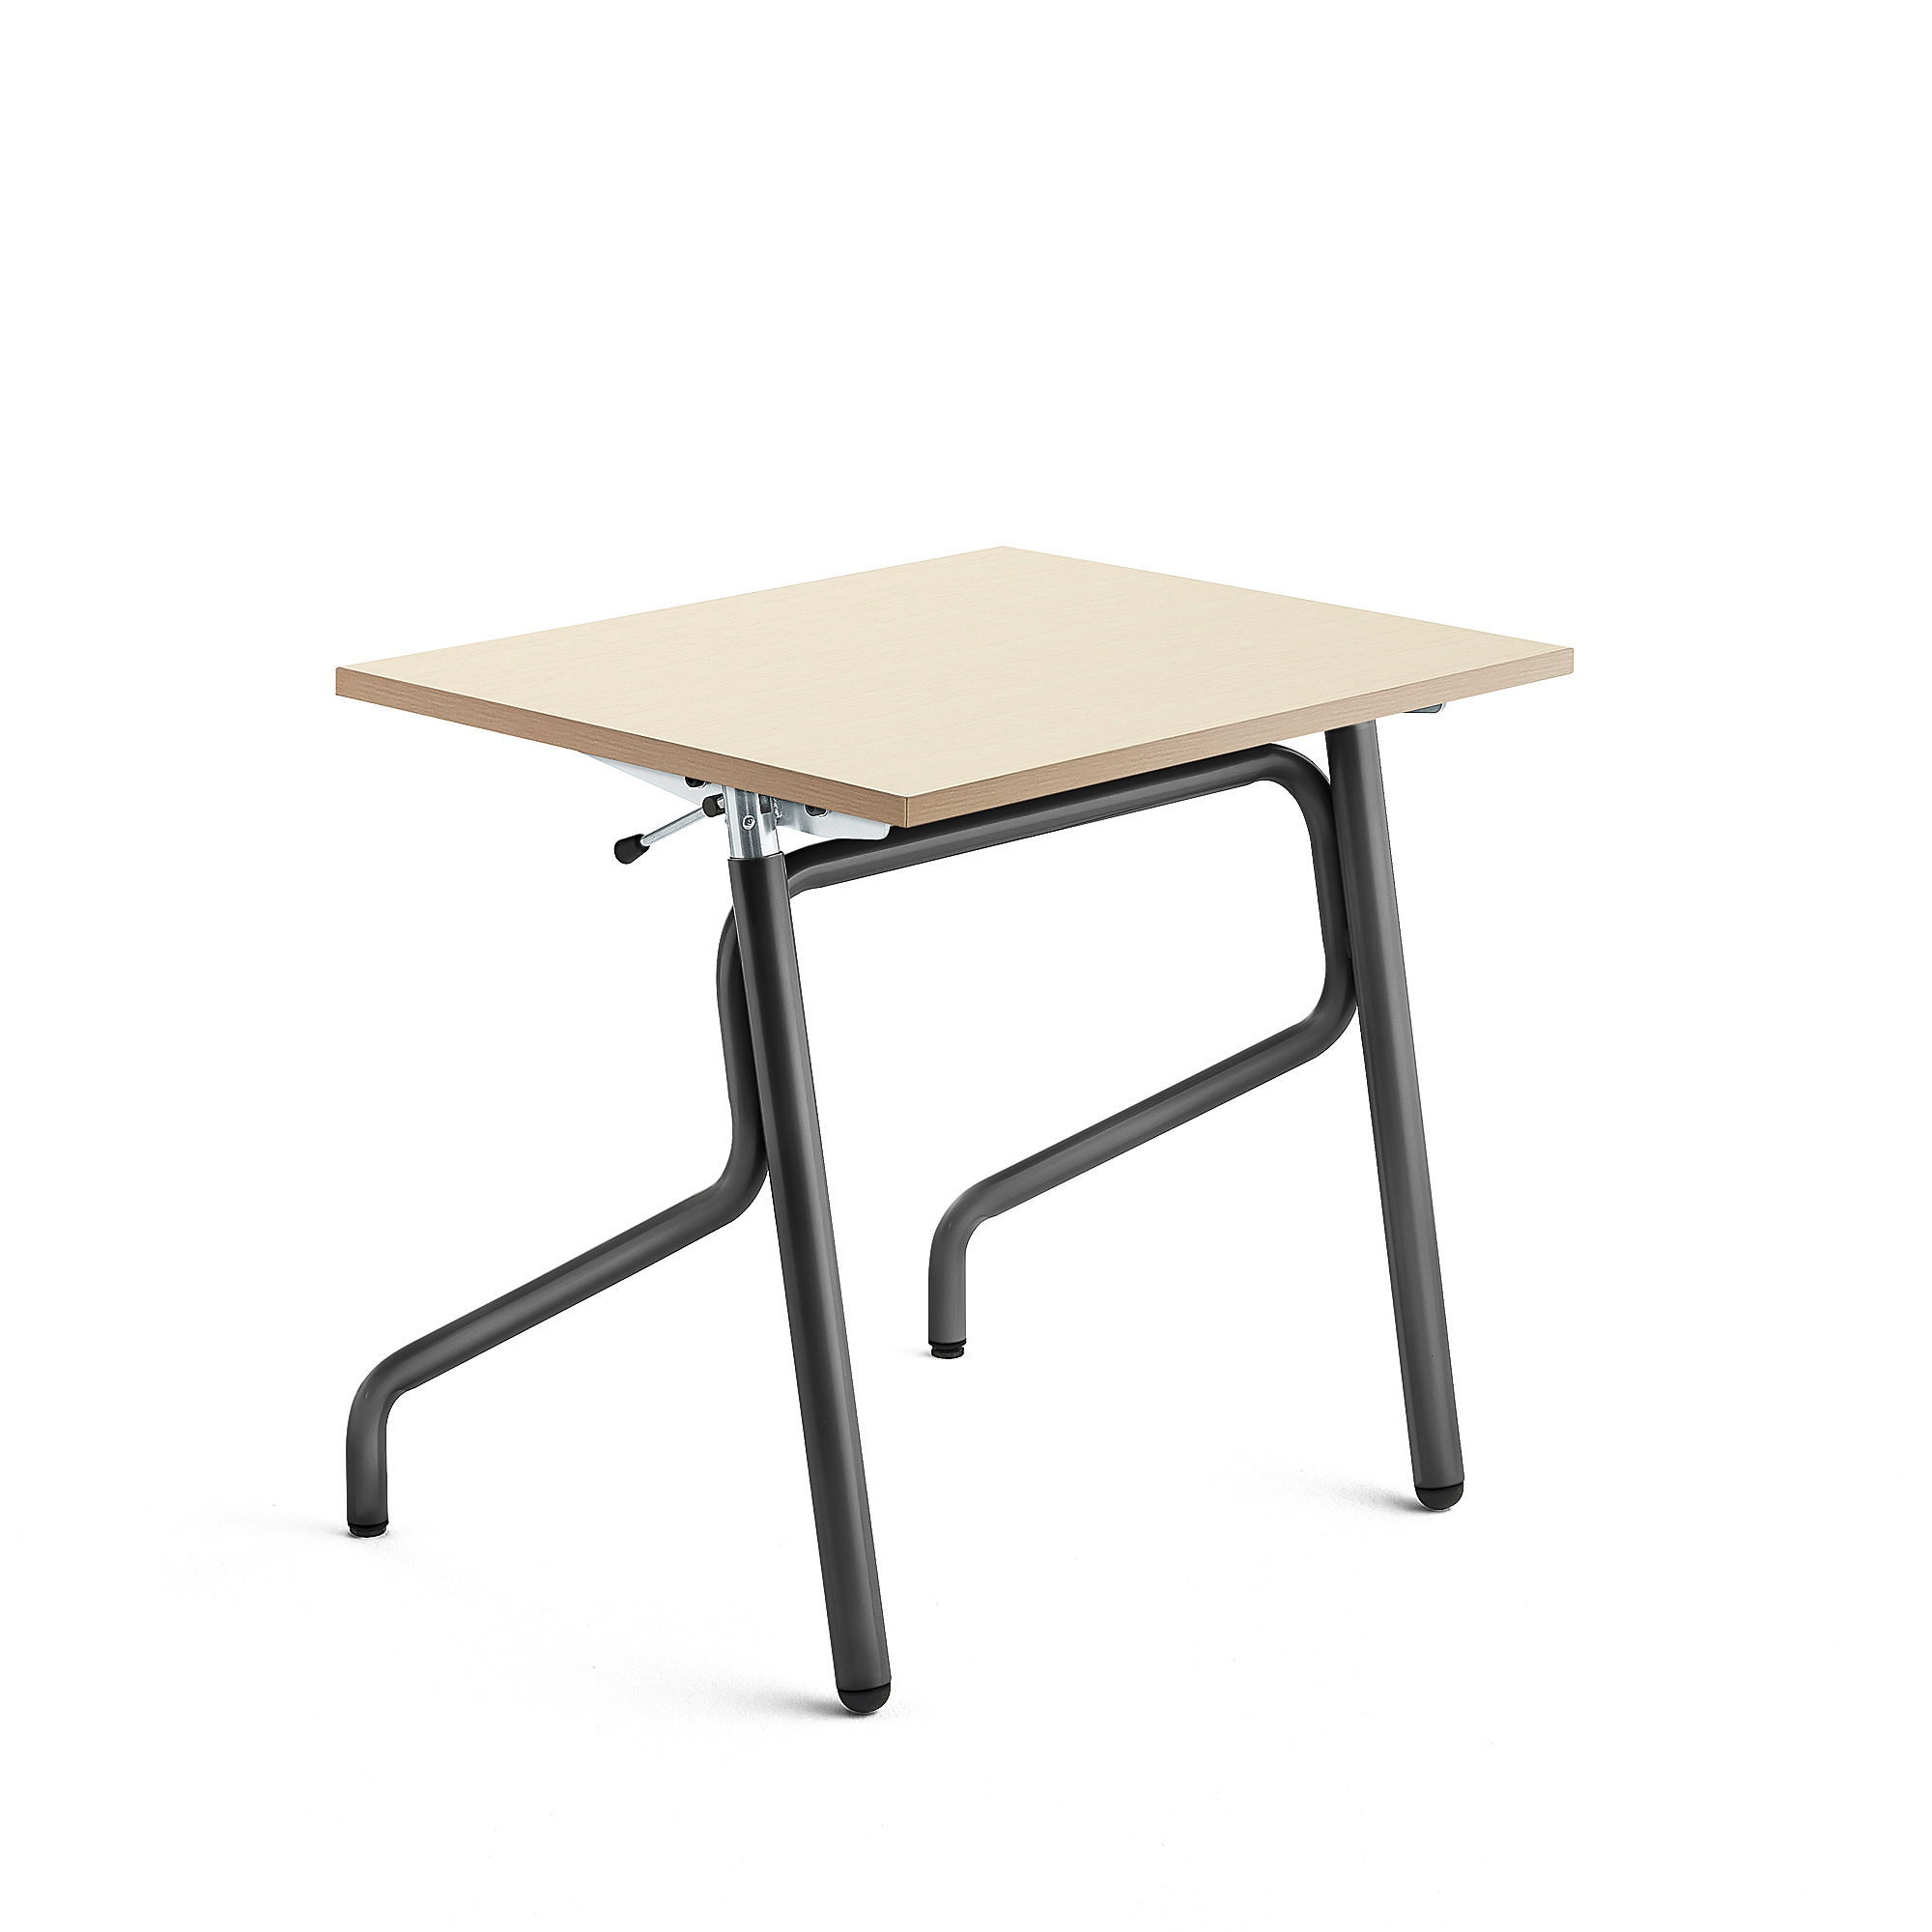 Školní lavice ADJUST, výškově nastavitelná, 700x600 mm, HPL deska, bříza, antracitově šedá